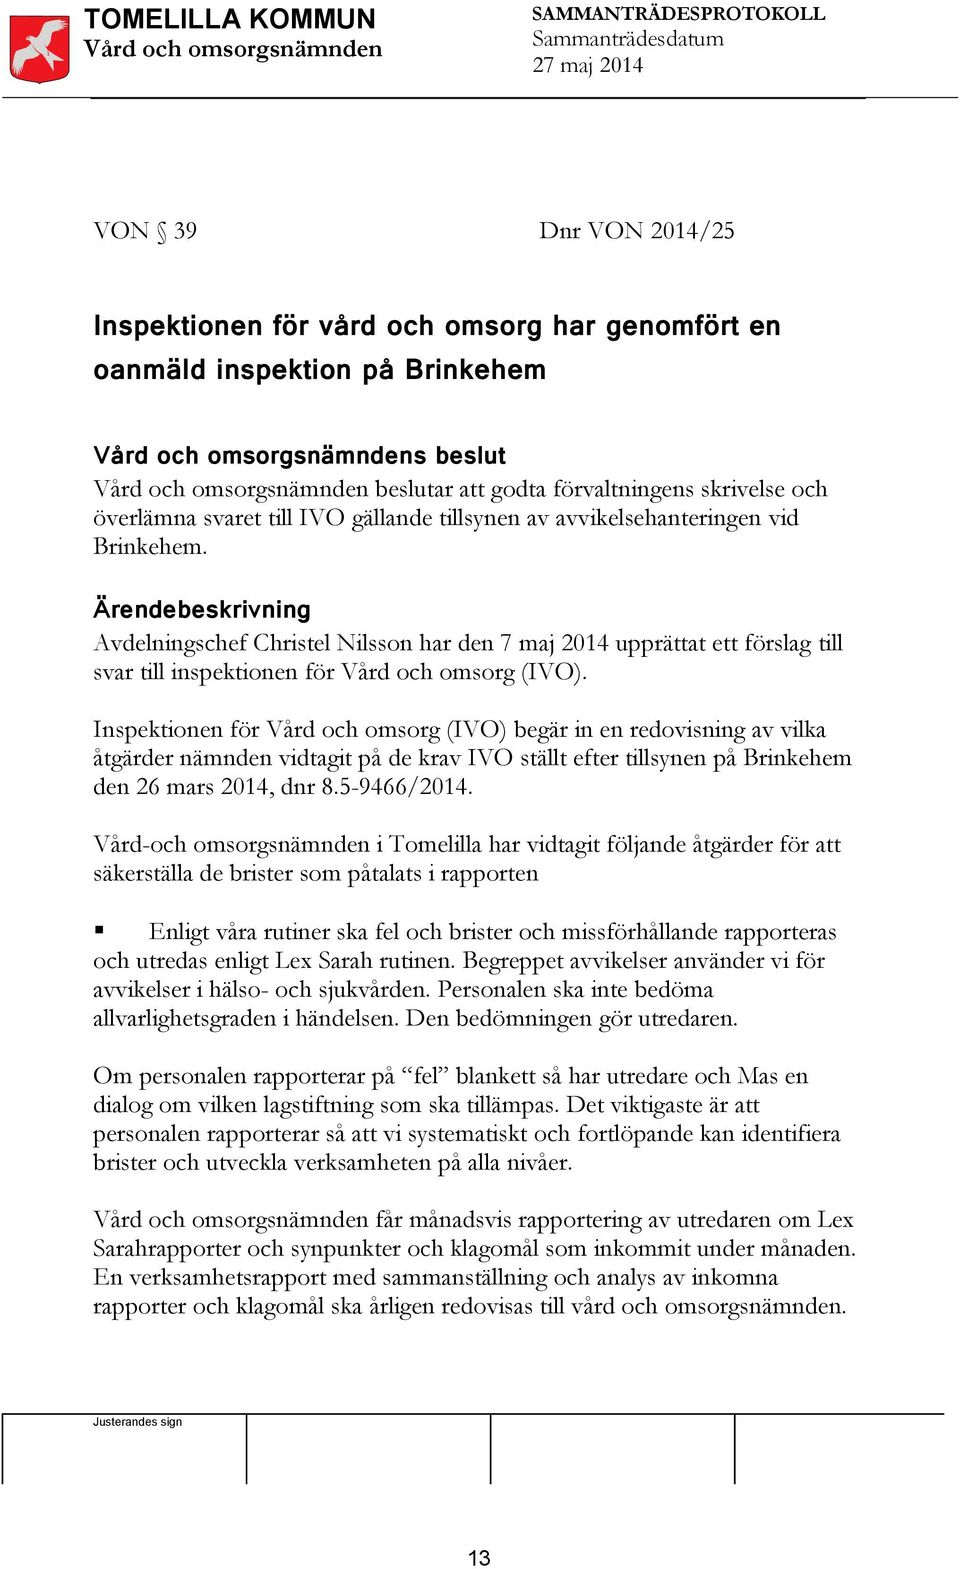 Inspektionen för Vård och omsorg (IVO) begär in en redovisning av vilka åtgärder nämnden vidtagit på de krav IVO ställt efter tillsynen på Brinkehem den 26 mars 2014, dnr 8.5-9466/2014.